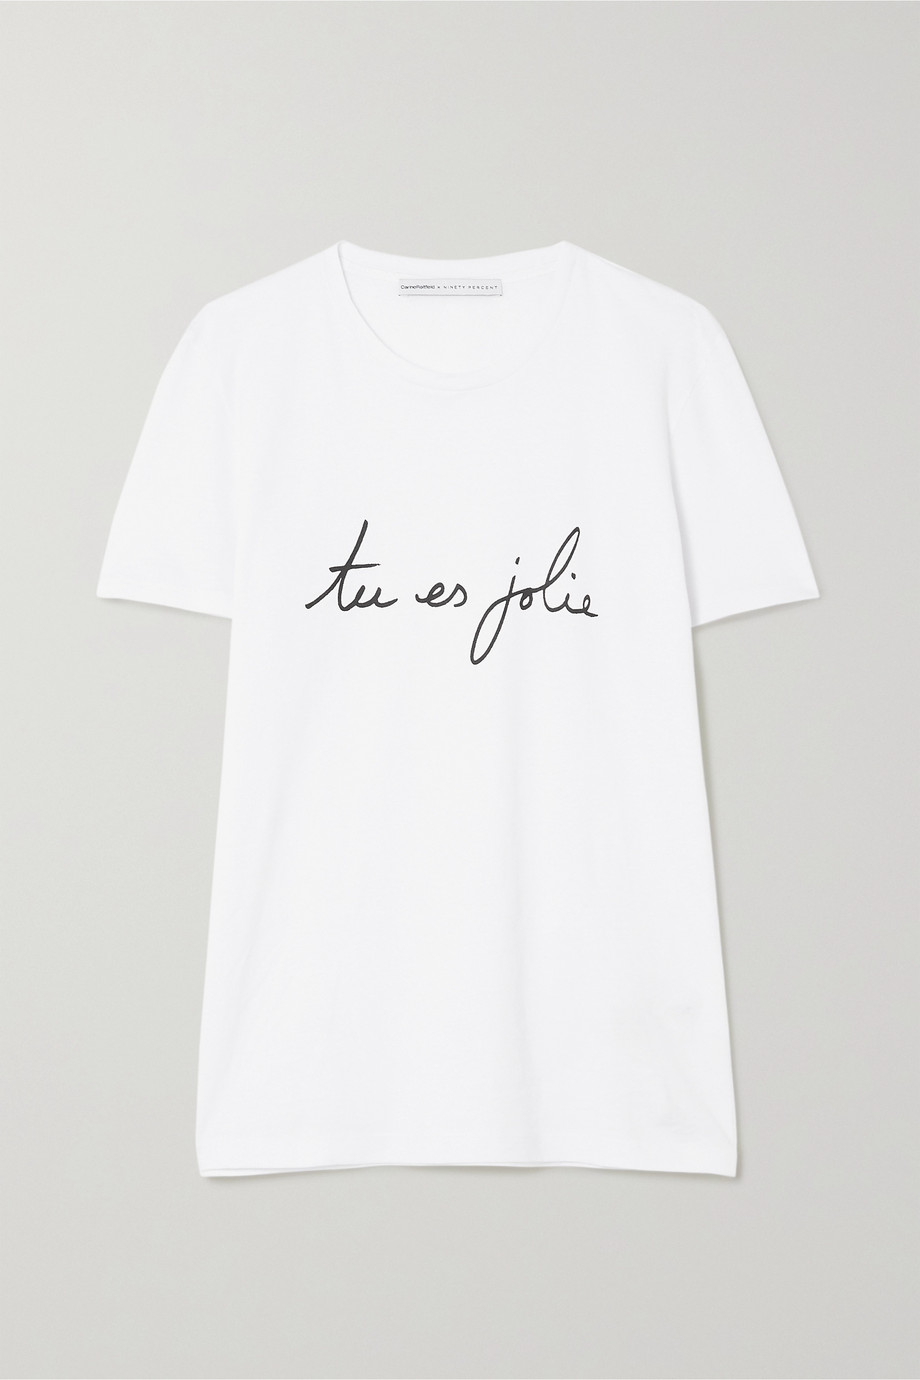 Net-a-Porter x Carine Roitfeld Parfums International Women's Day T-shirt 2020.